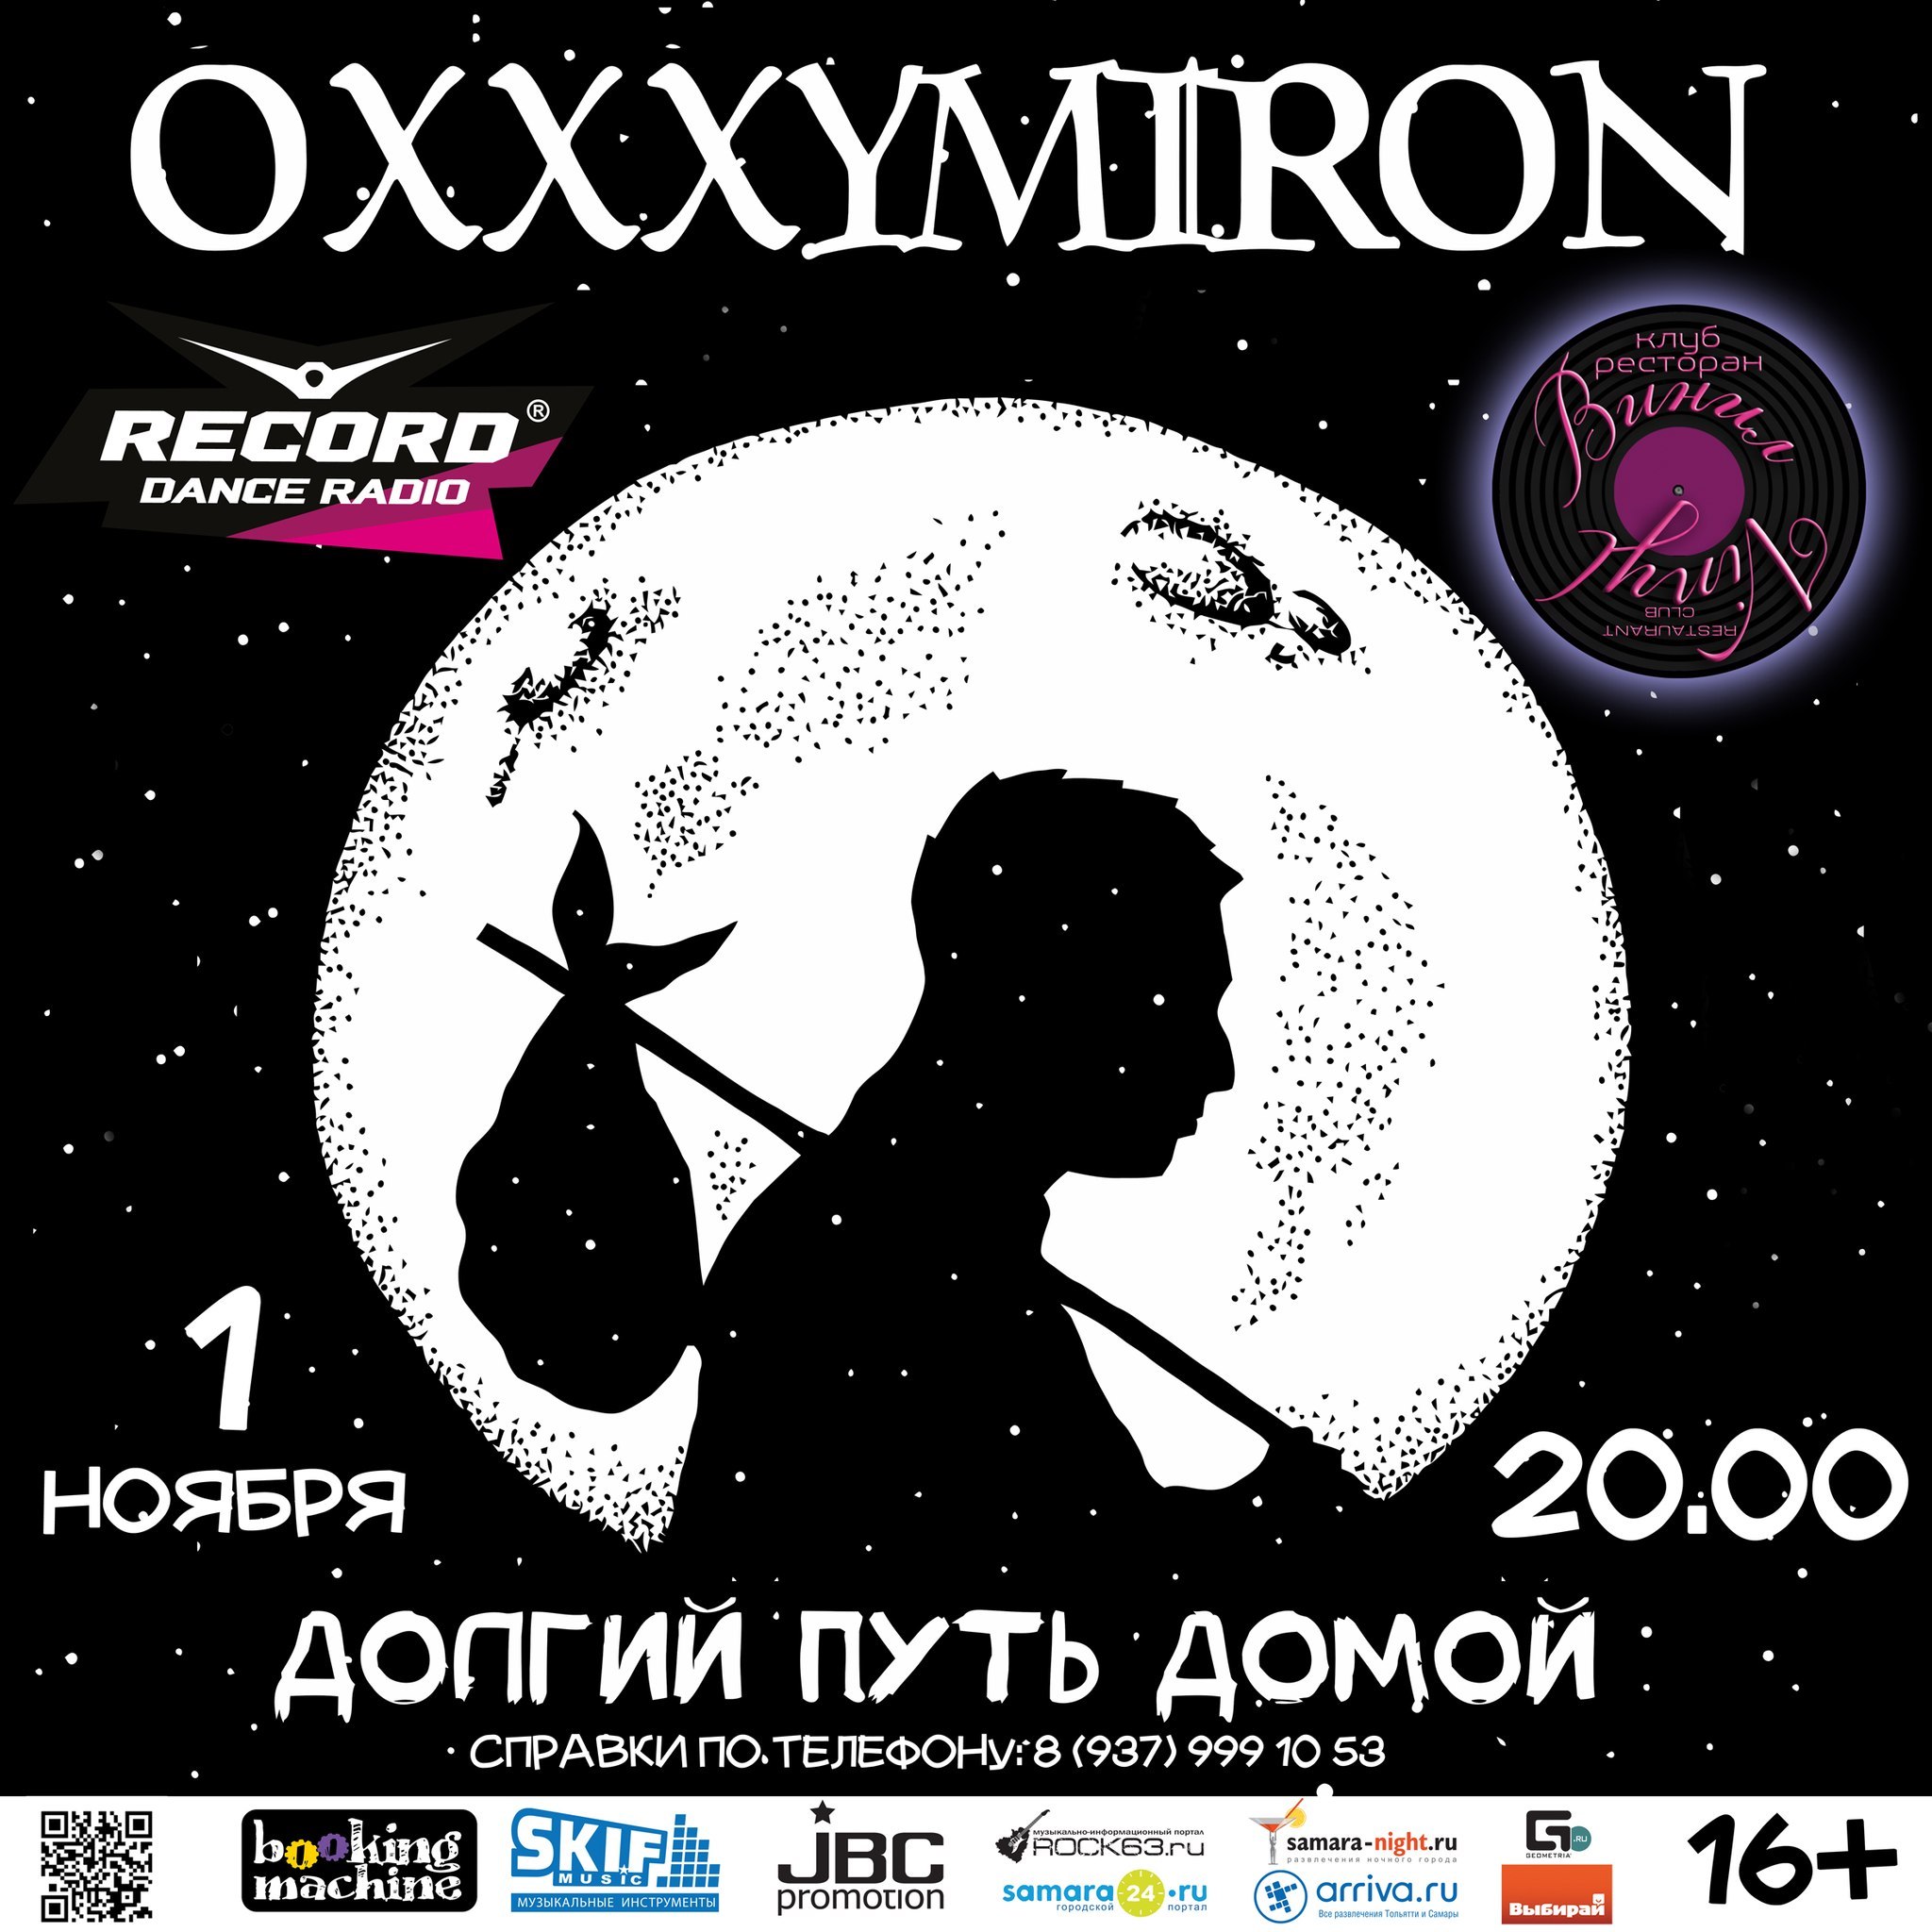 oxxxymiron new